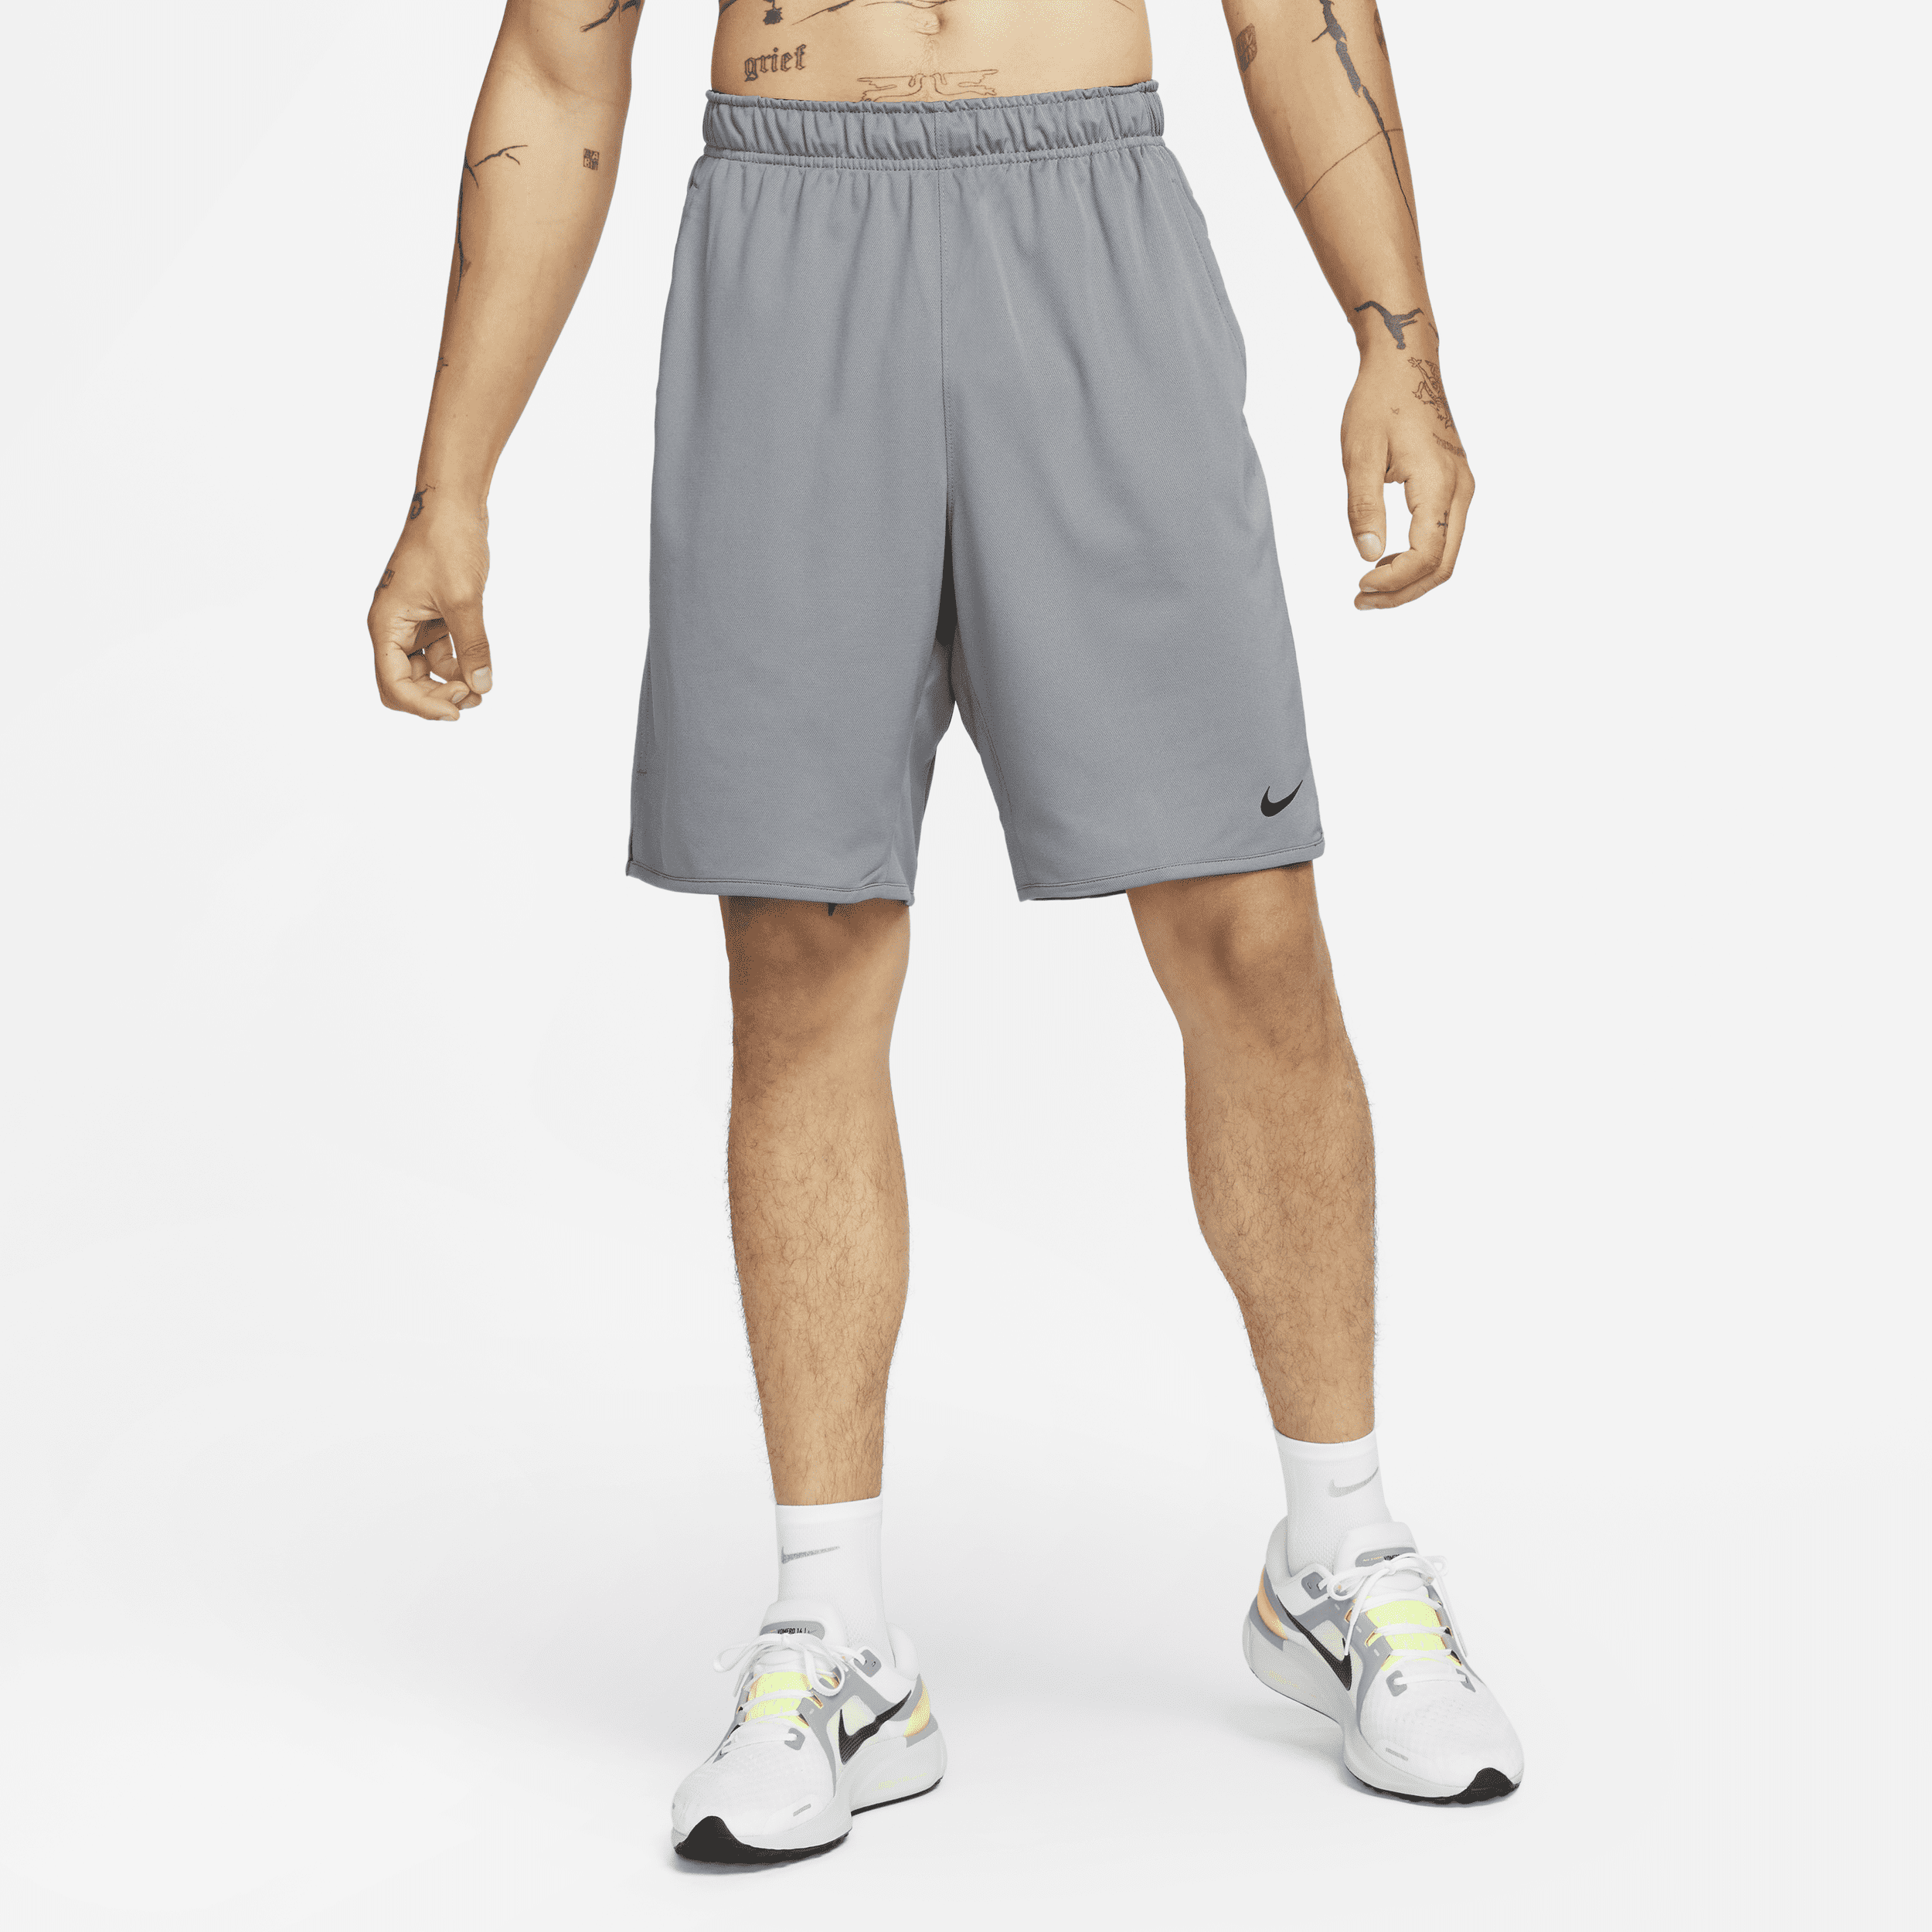 Nike Totality Pantalón corto versátil Dri-FIT de 23 cm sin forro - Hombre - Gris